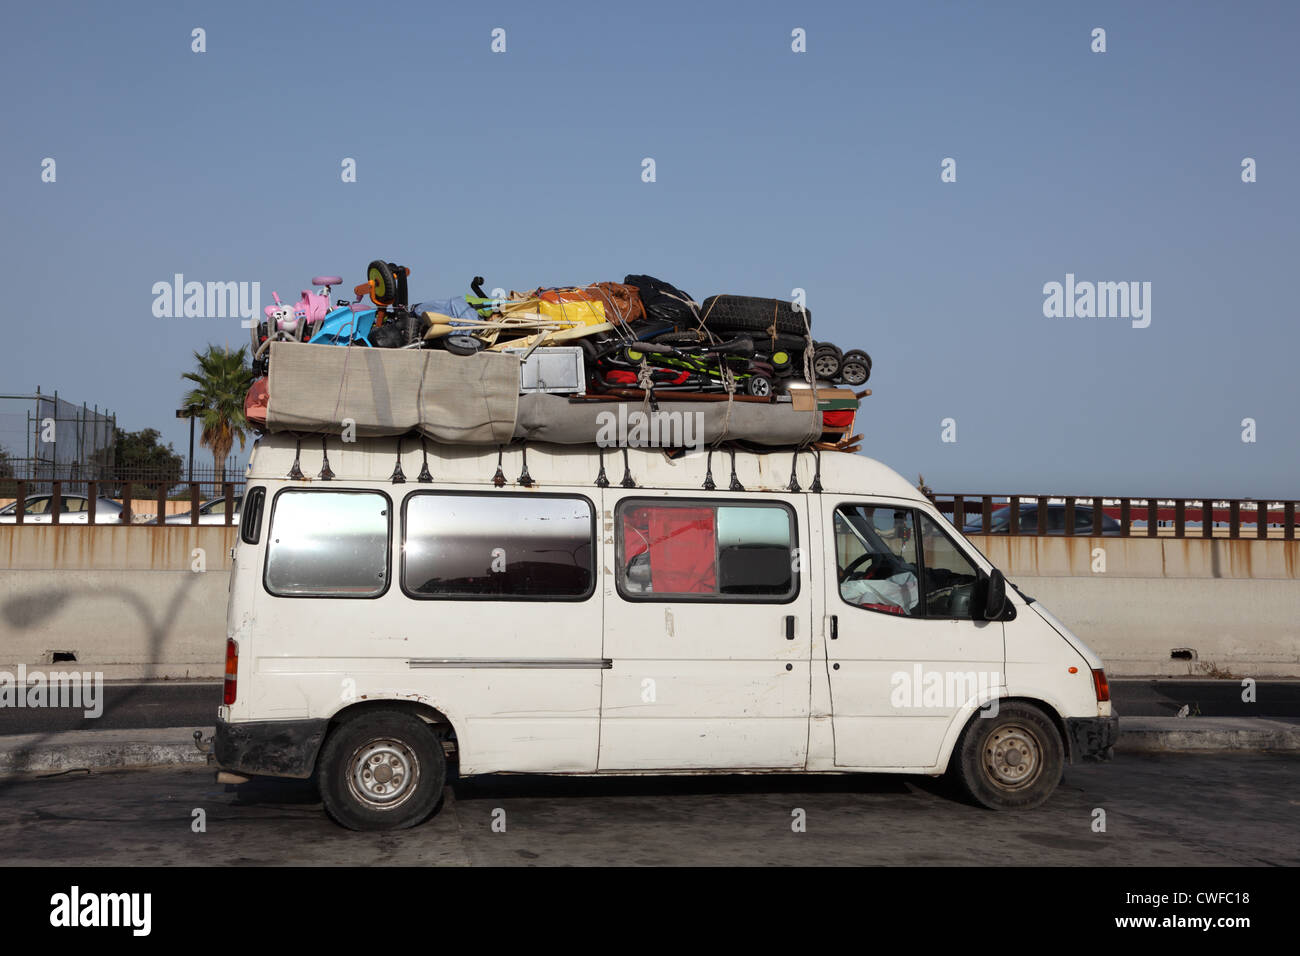 Sovraccarico van voce in Marocco Foto stock - Alamy